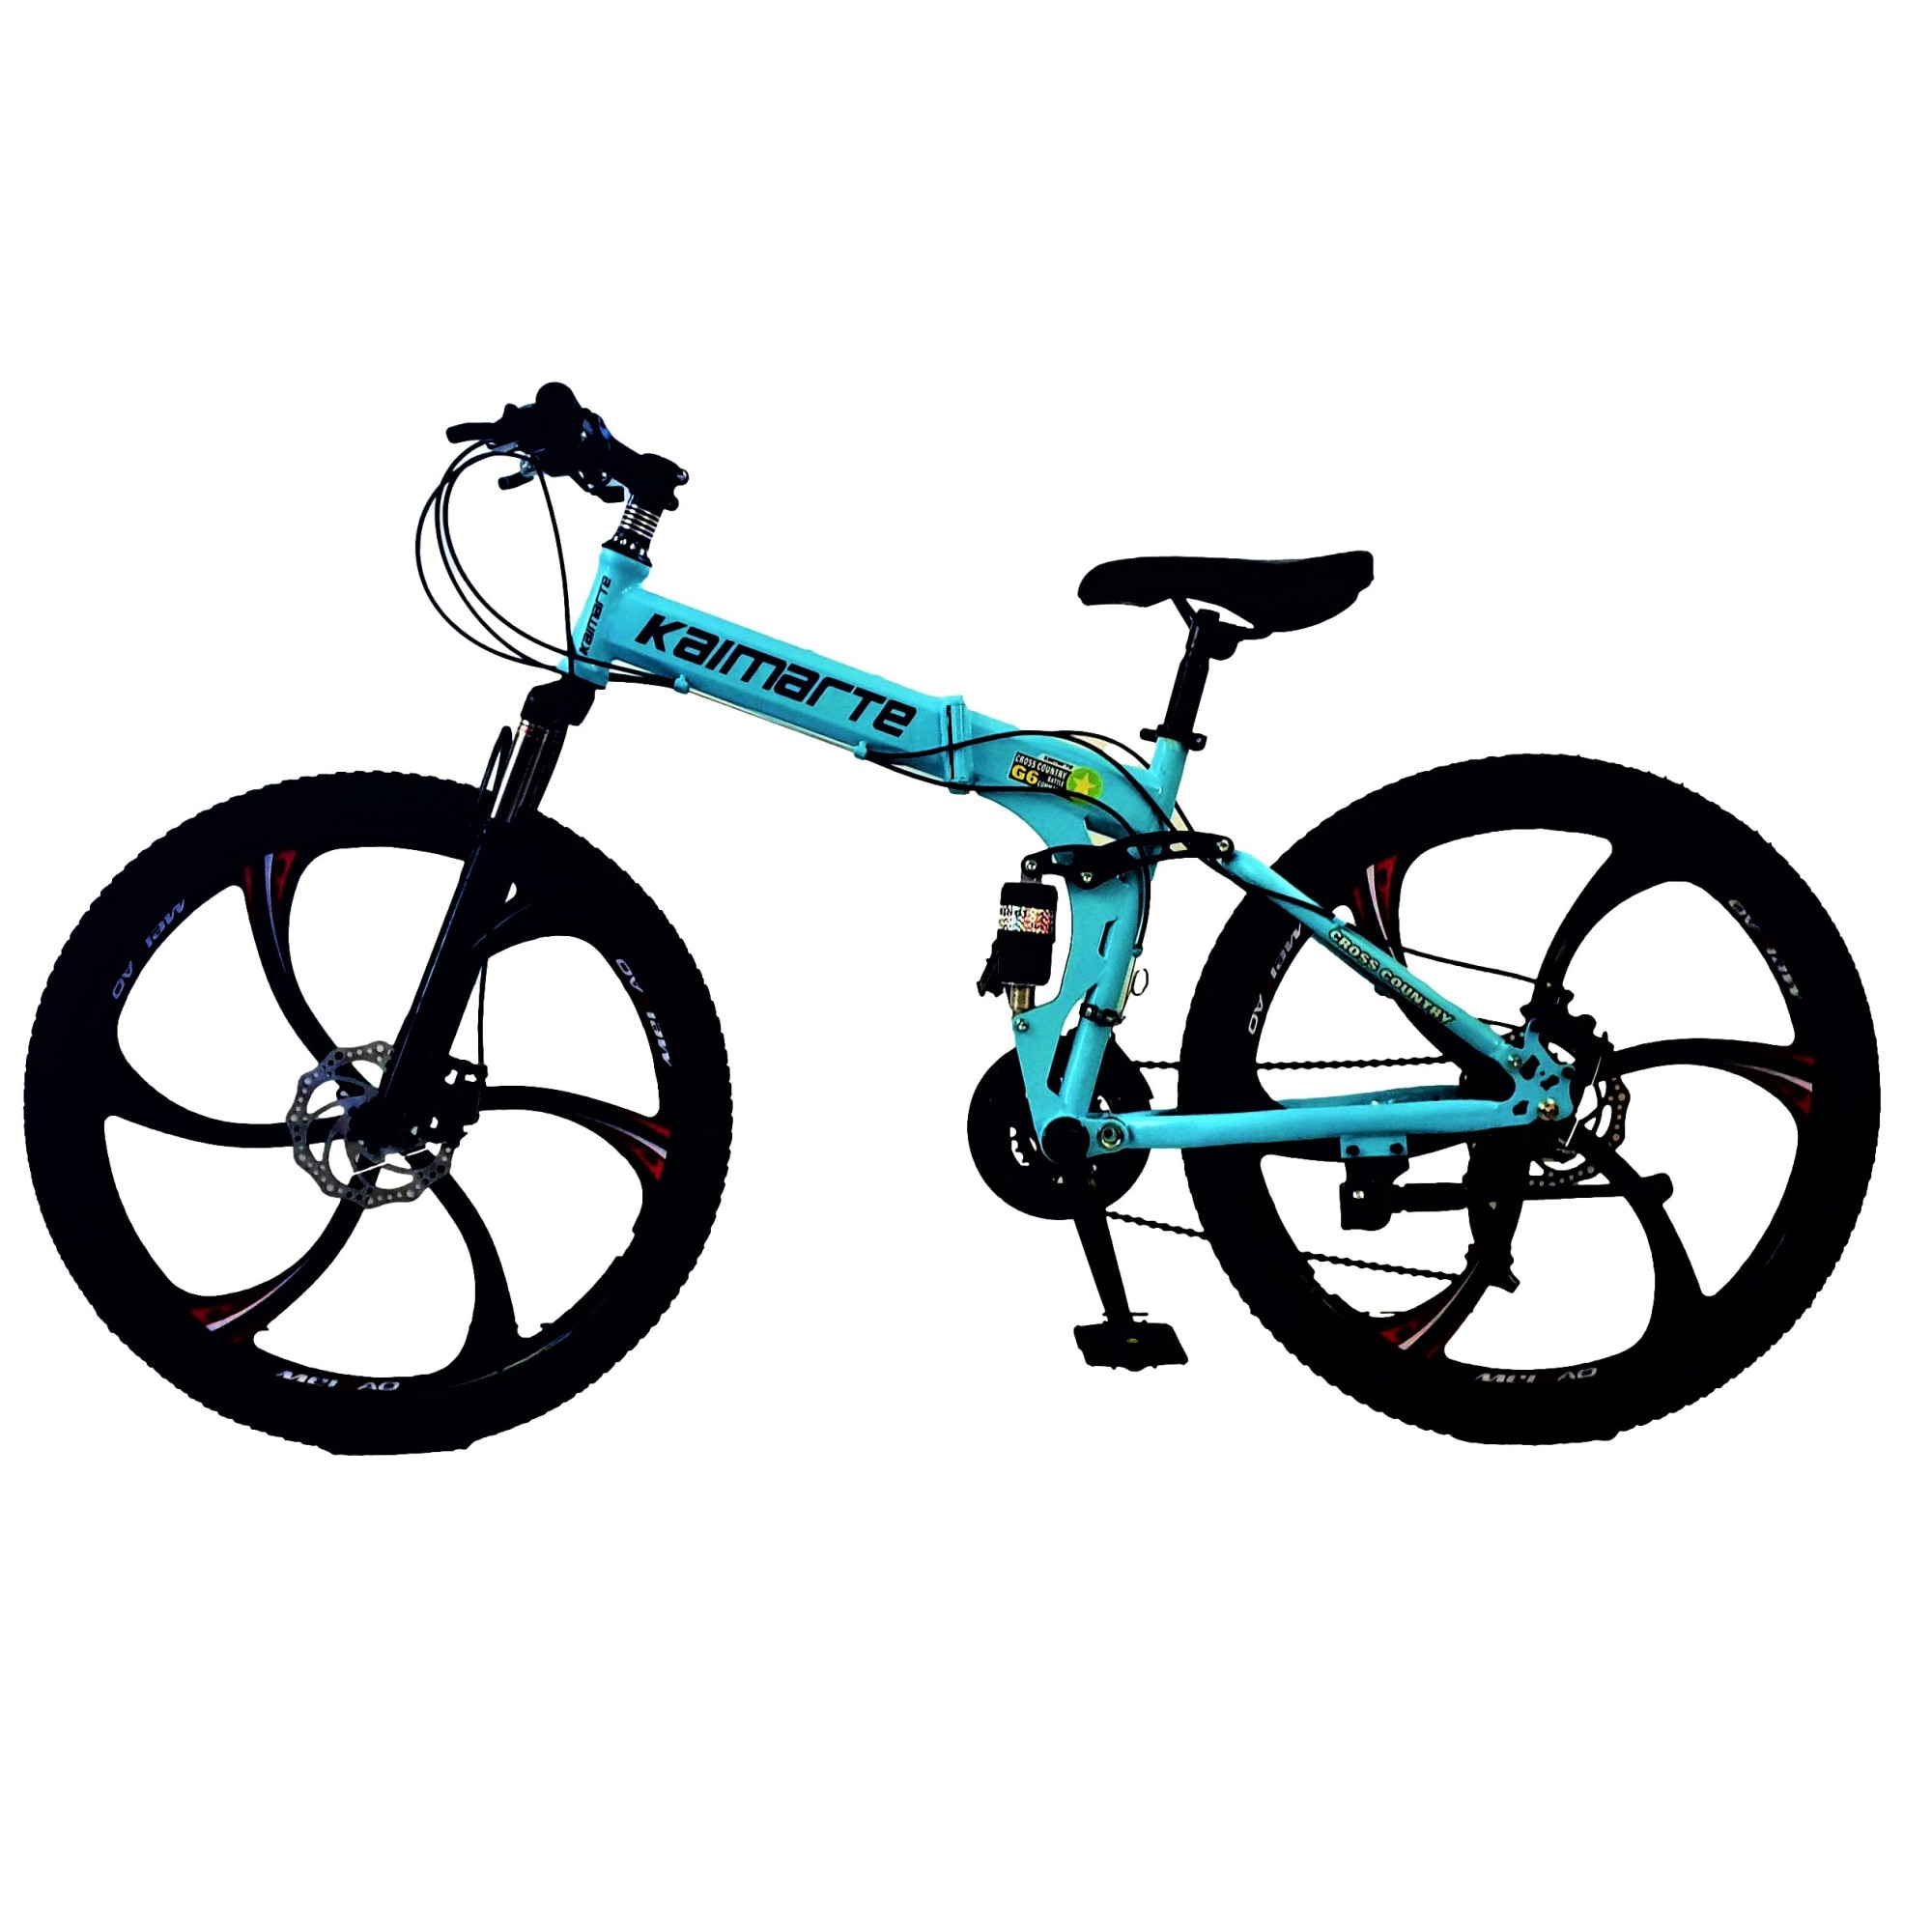 relieve Papua New Guinea fiber Bicicleta Mountain Bike - KAIMARTE, AP3, 26 inch, genti aluminiu turnate, 6  spite, cadru otel, frane mecanice pe disc fata/spate, full suspansie,  pliabila, 21 de viteze, culoare blue - eMAG.ro